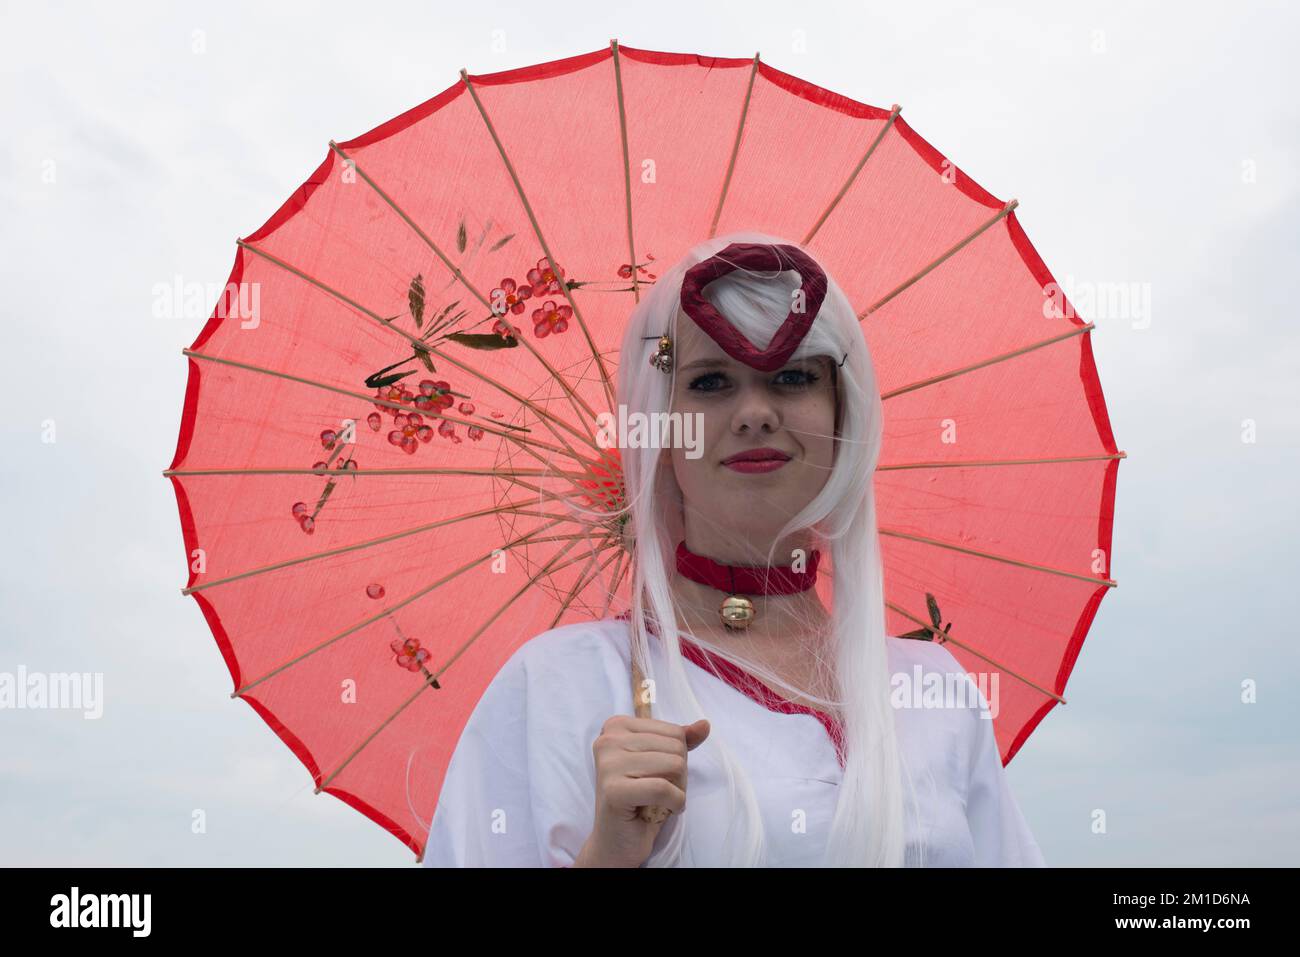 Un participant au festival Animique, vêtu d'un costume blanc et d'un parapluie rouge Banque D'Images